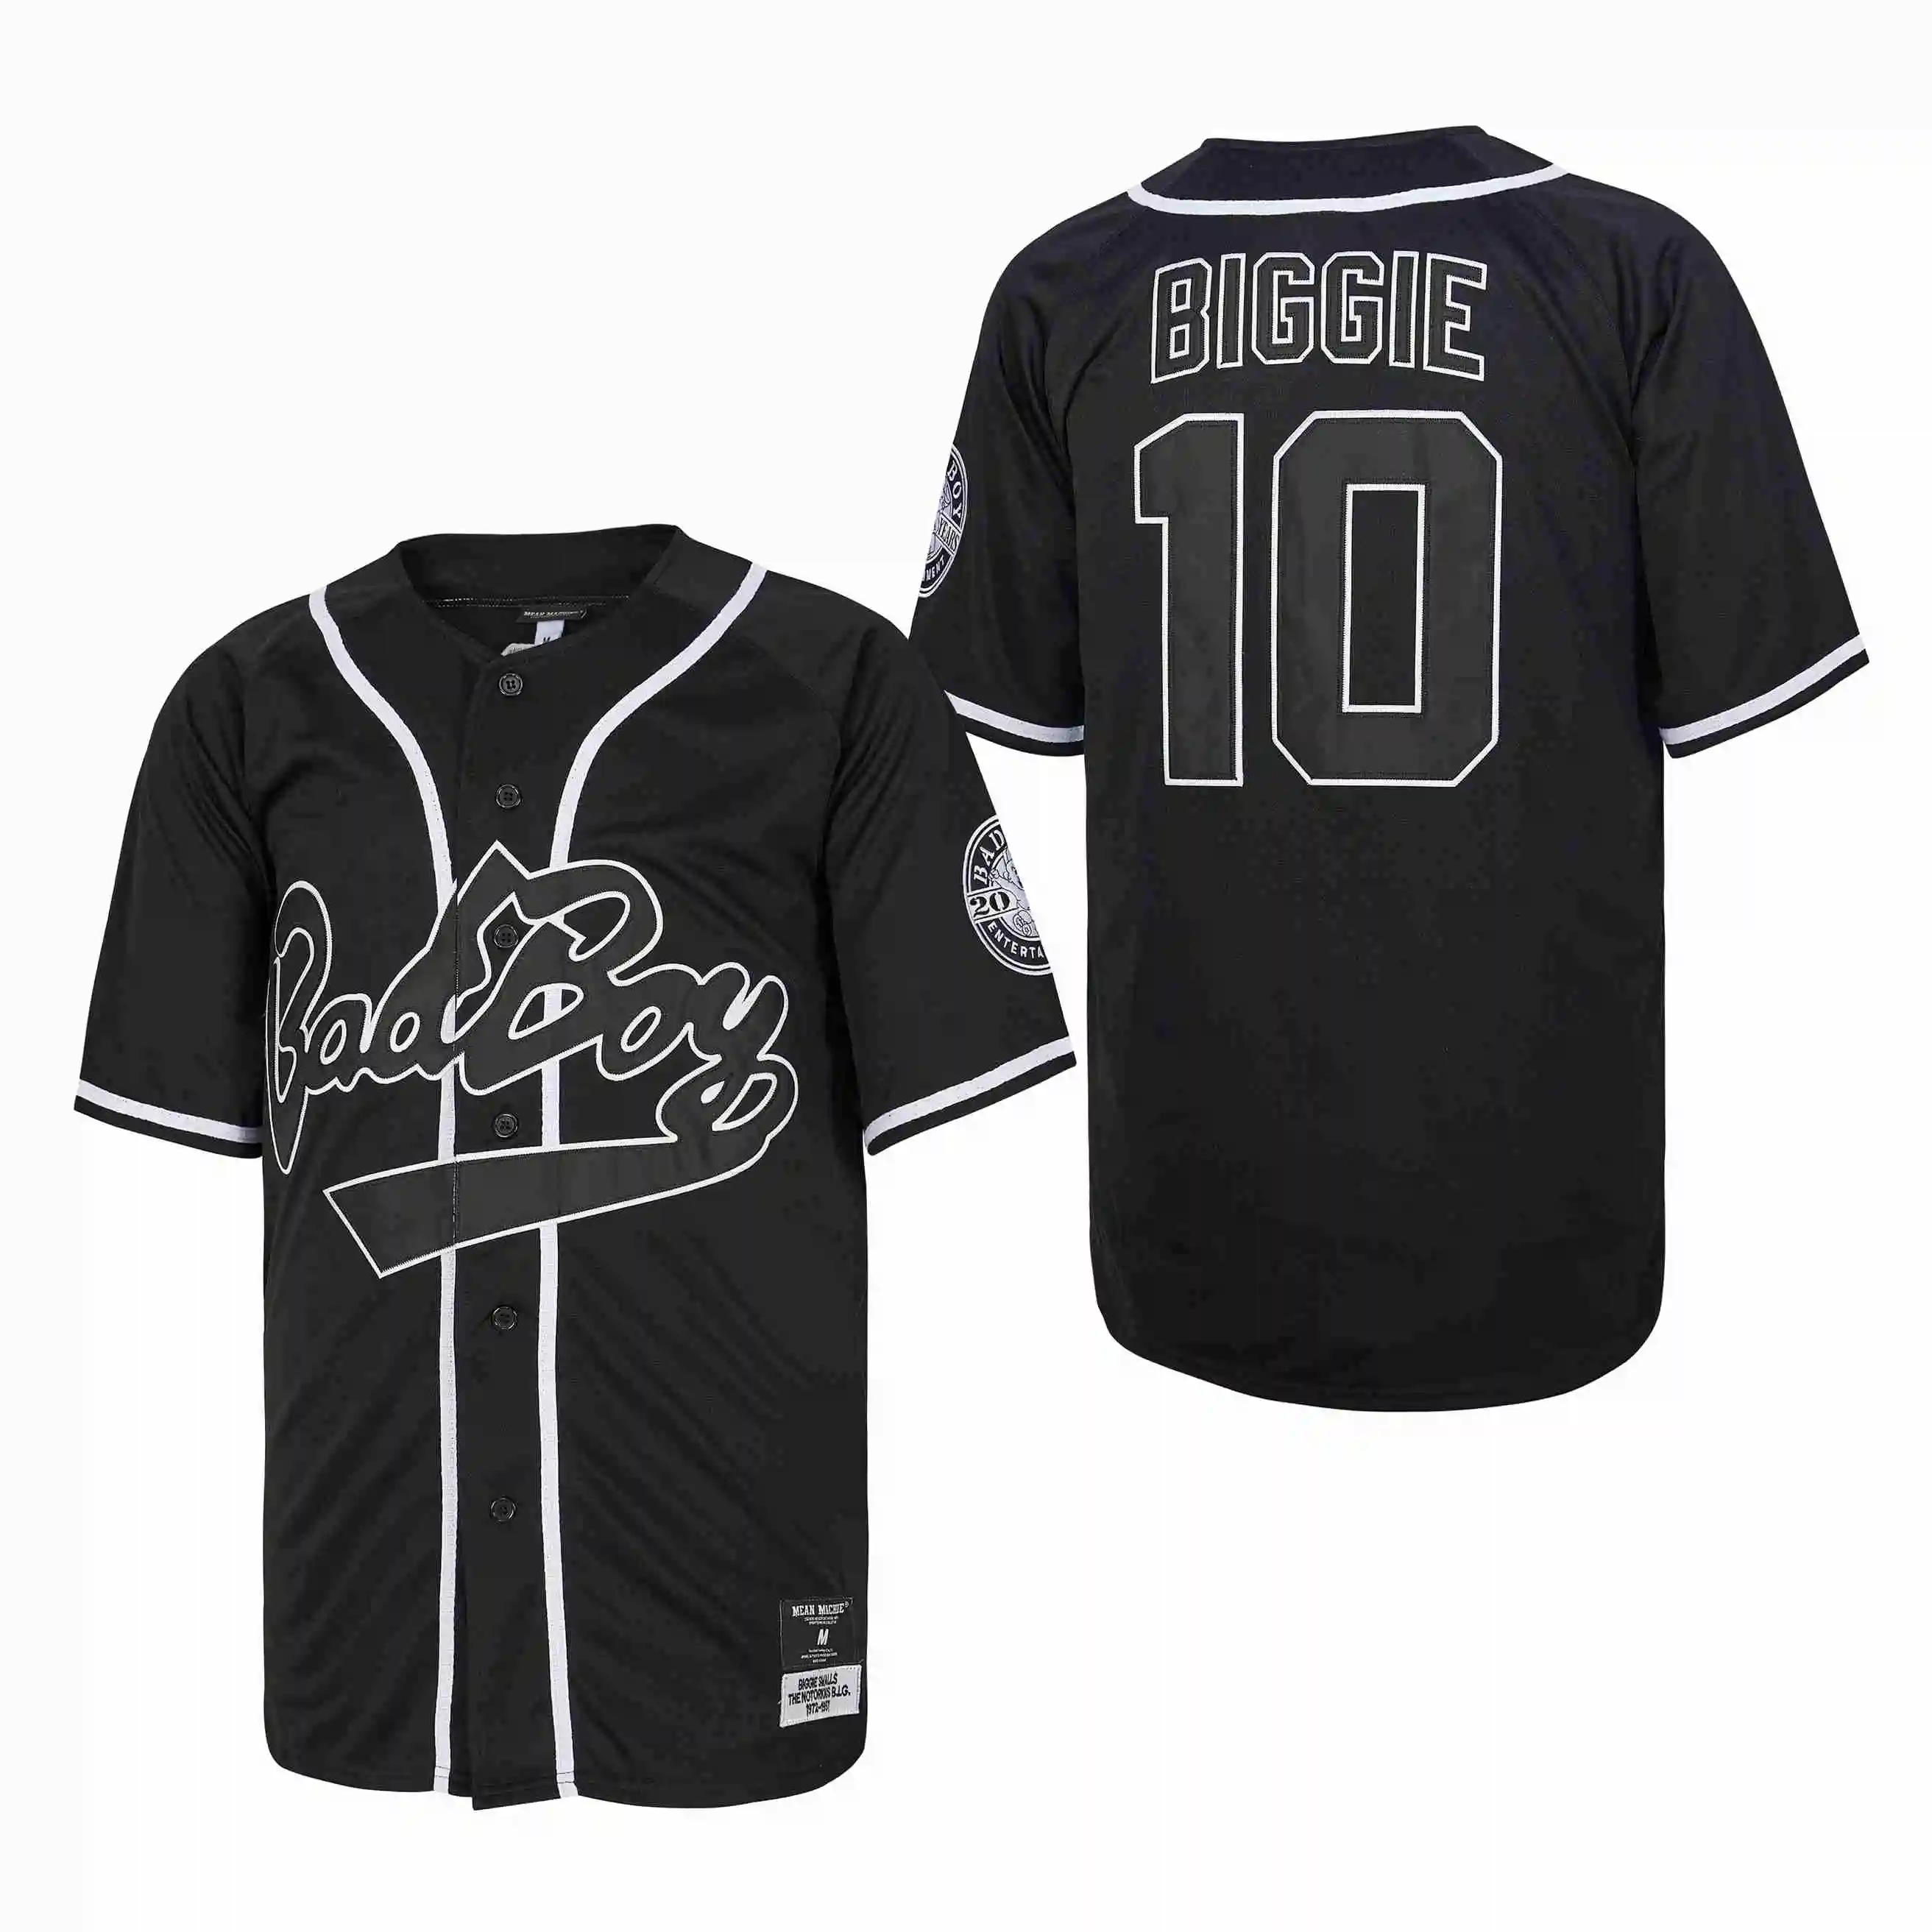 

Трикотажные изделия для бейсбола BG Biggie Smalls 10 # Bad Boy, известные большие Джерси с вышивкой, уличная спортивная одежда в стиле хип-хоп, новинка ...